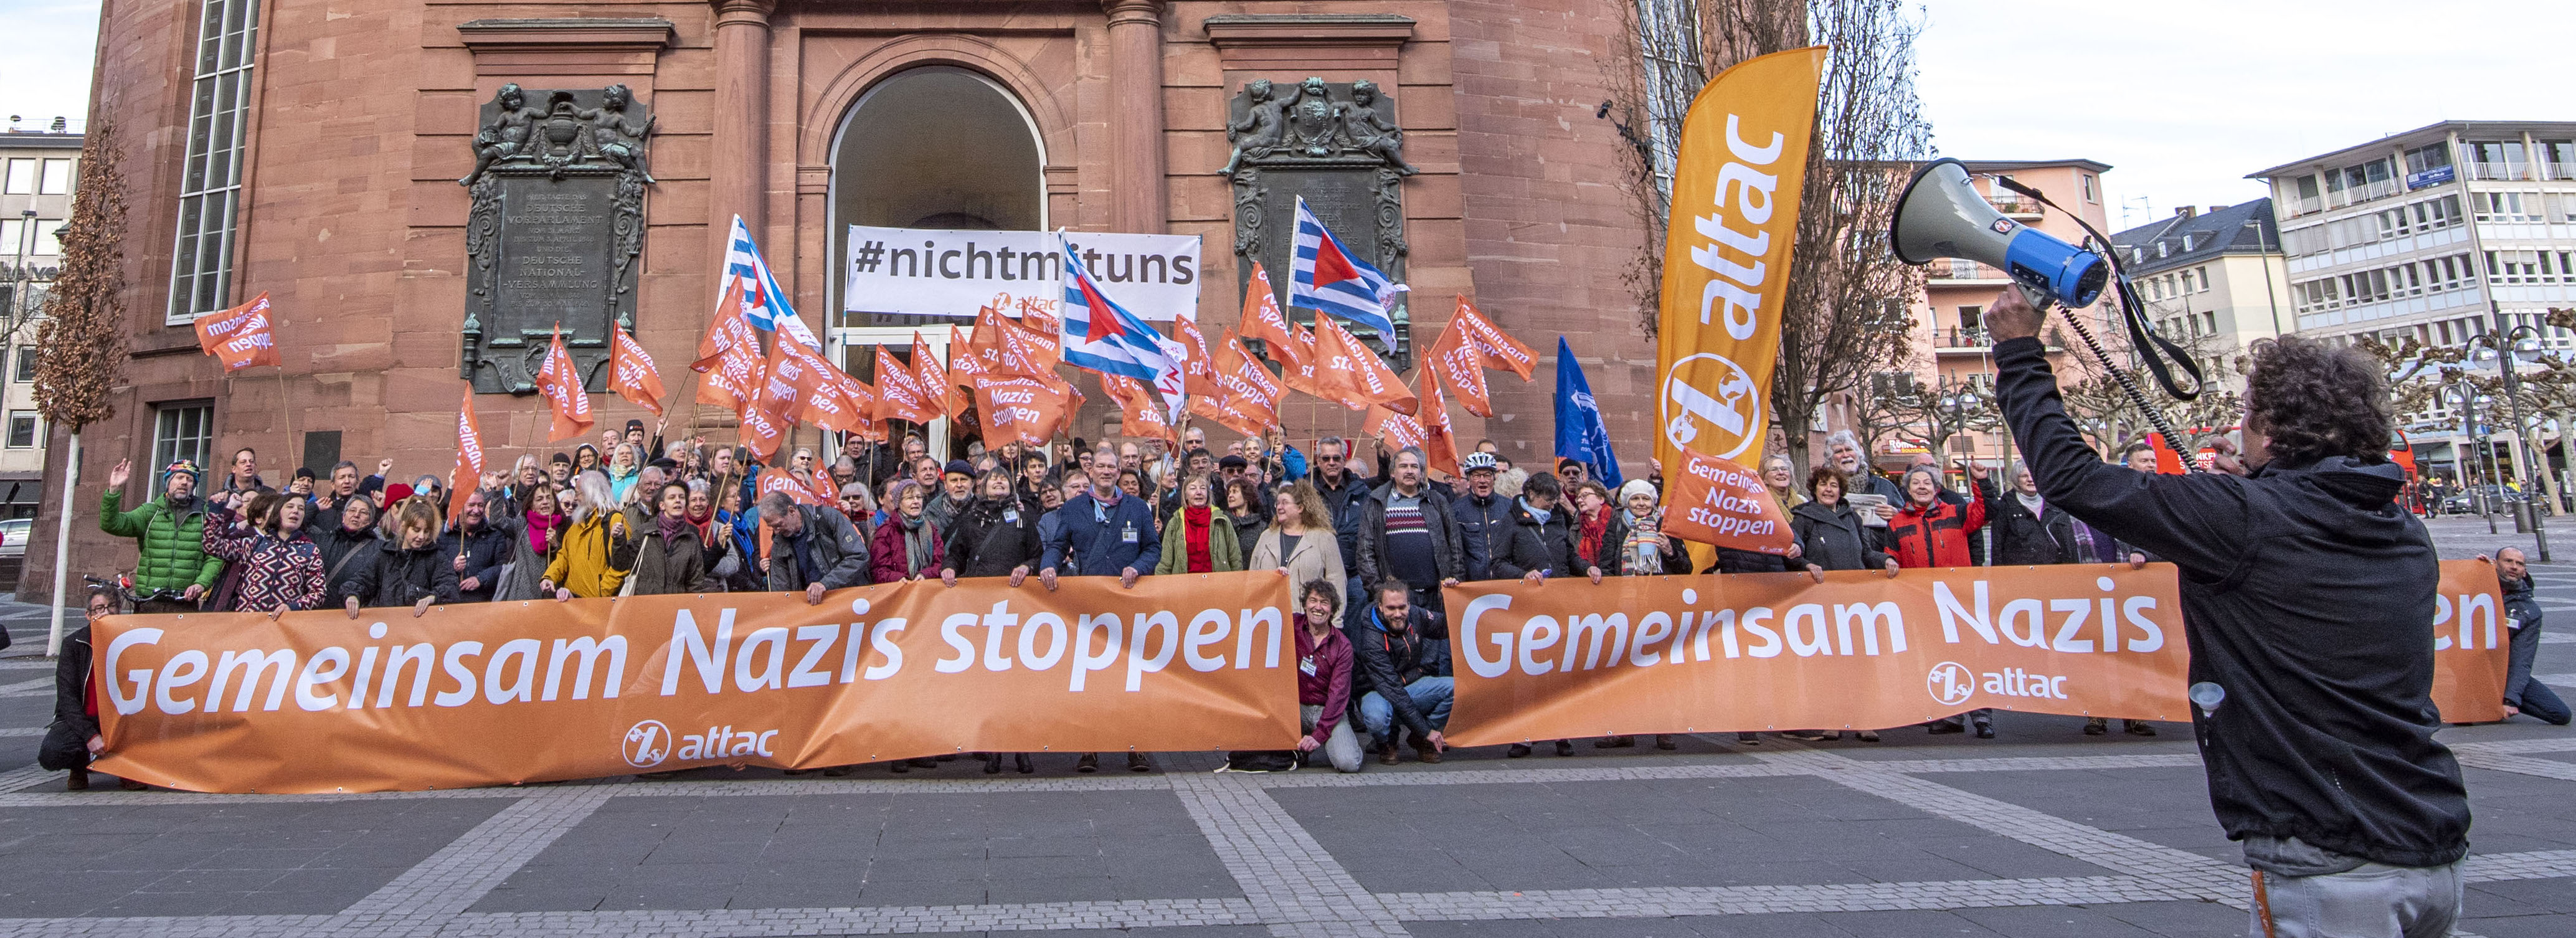 Attacies fordern gemeinsam vor der Paulskirche in Frankfurt am Main: "Gemeinsam Nazis stoppen!"